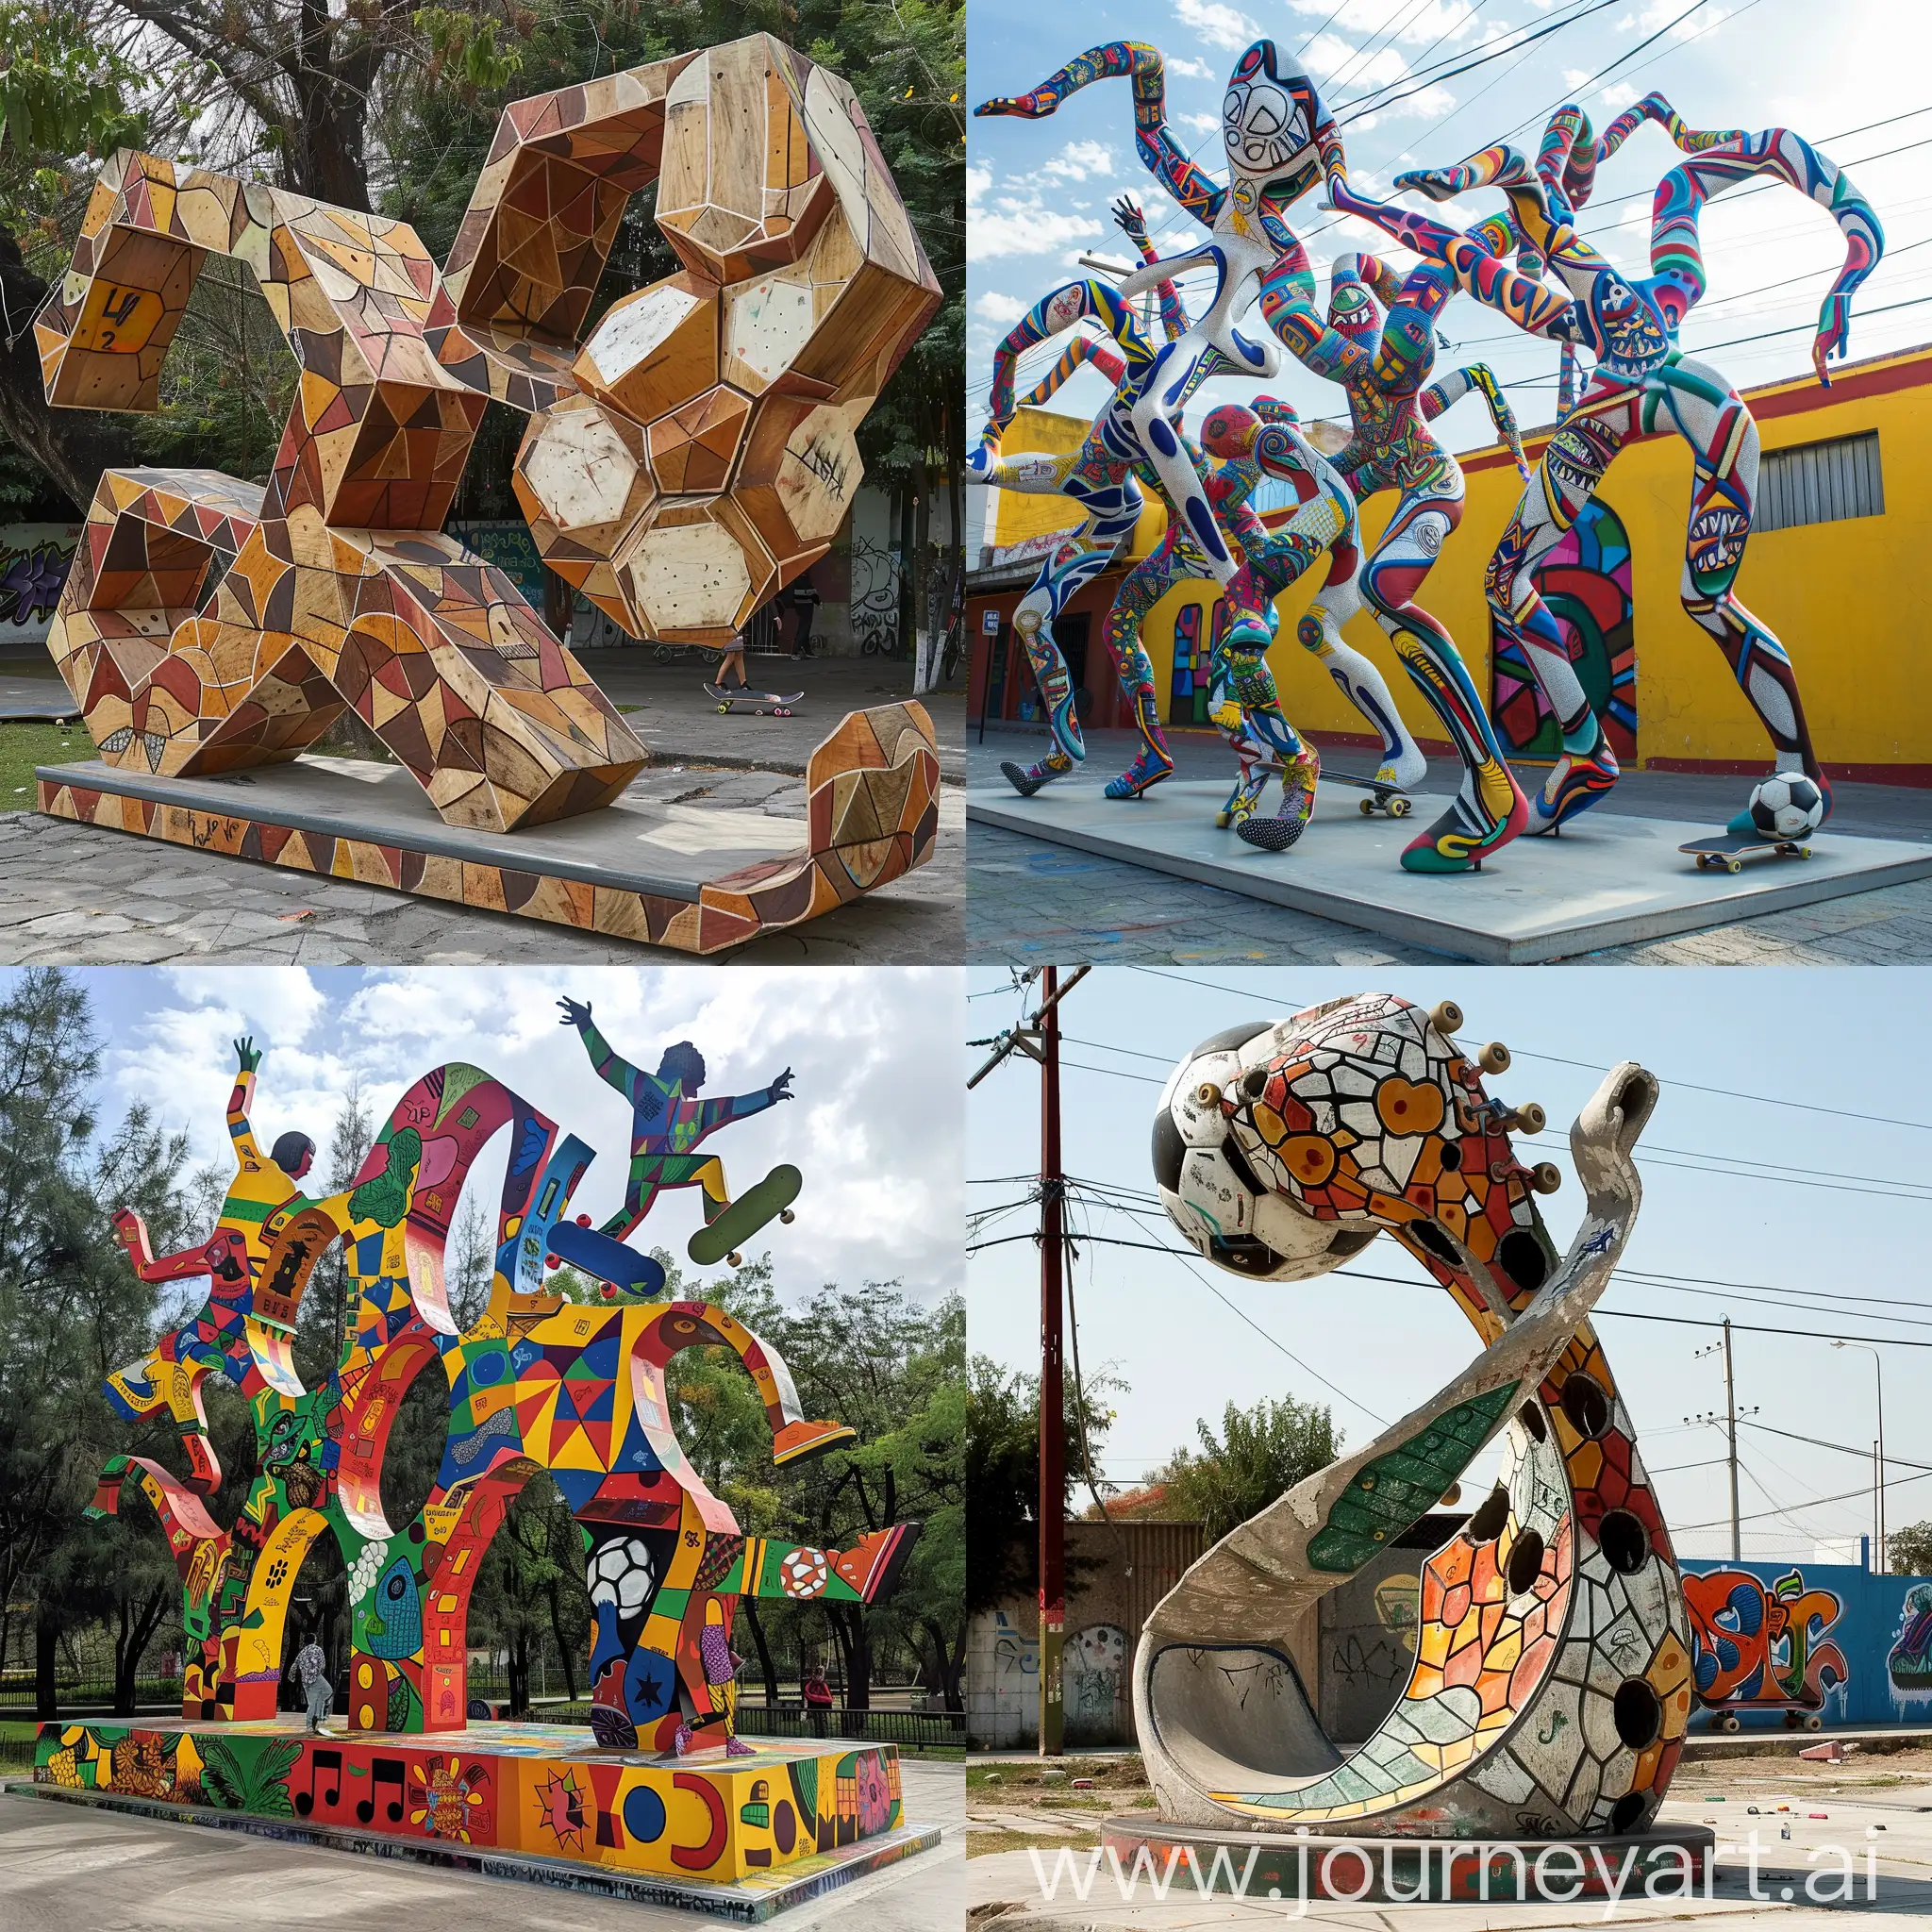 Generar una escultura urbana bajo el concepto de skateboard, futbol, comunidad unida, baile, y arte de graffiti en la colonia Balcones del 4 en Guadalajara jalisco mexico